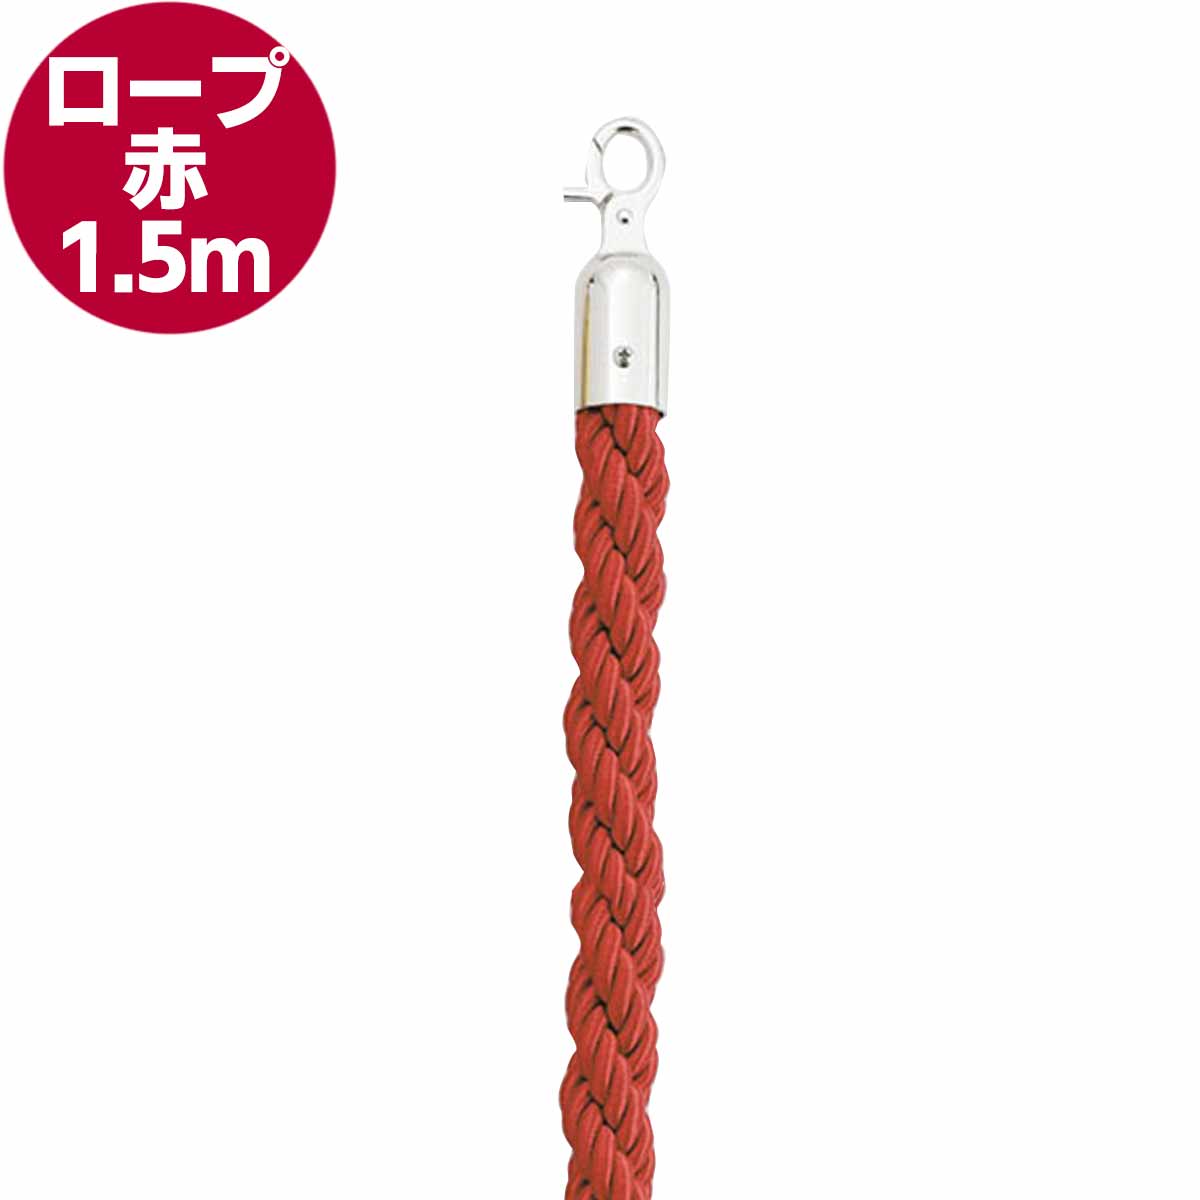 ロープ赤(ガイドポール用)